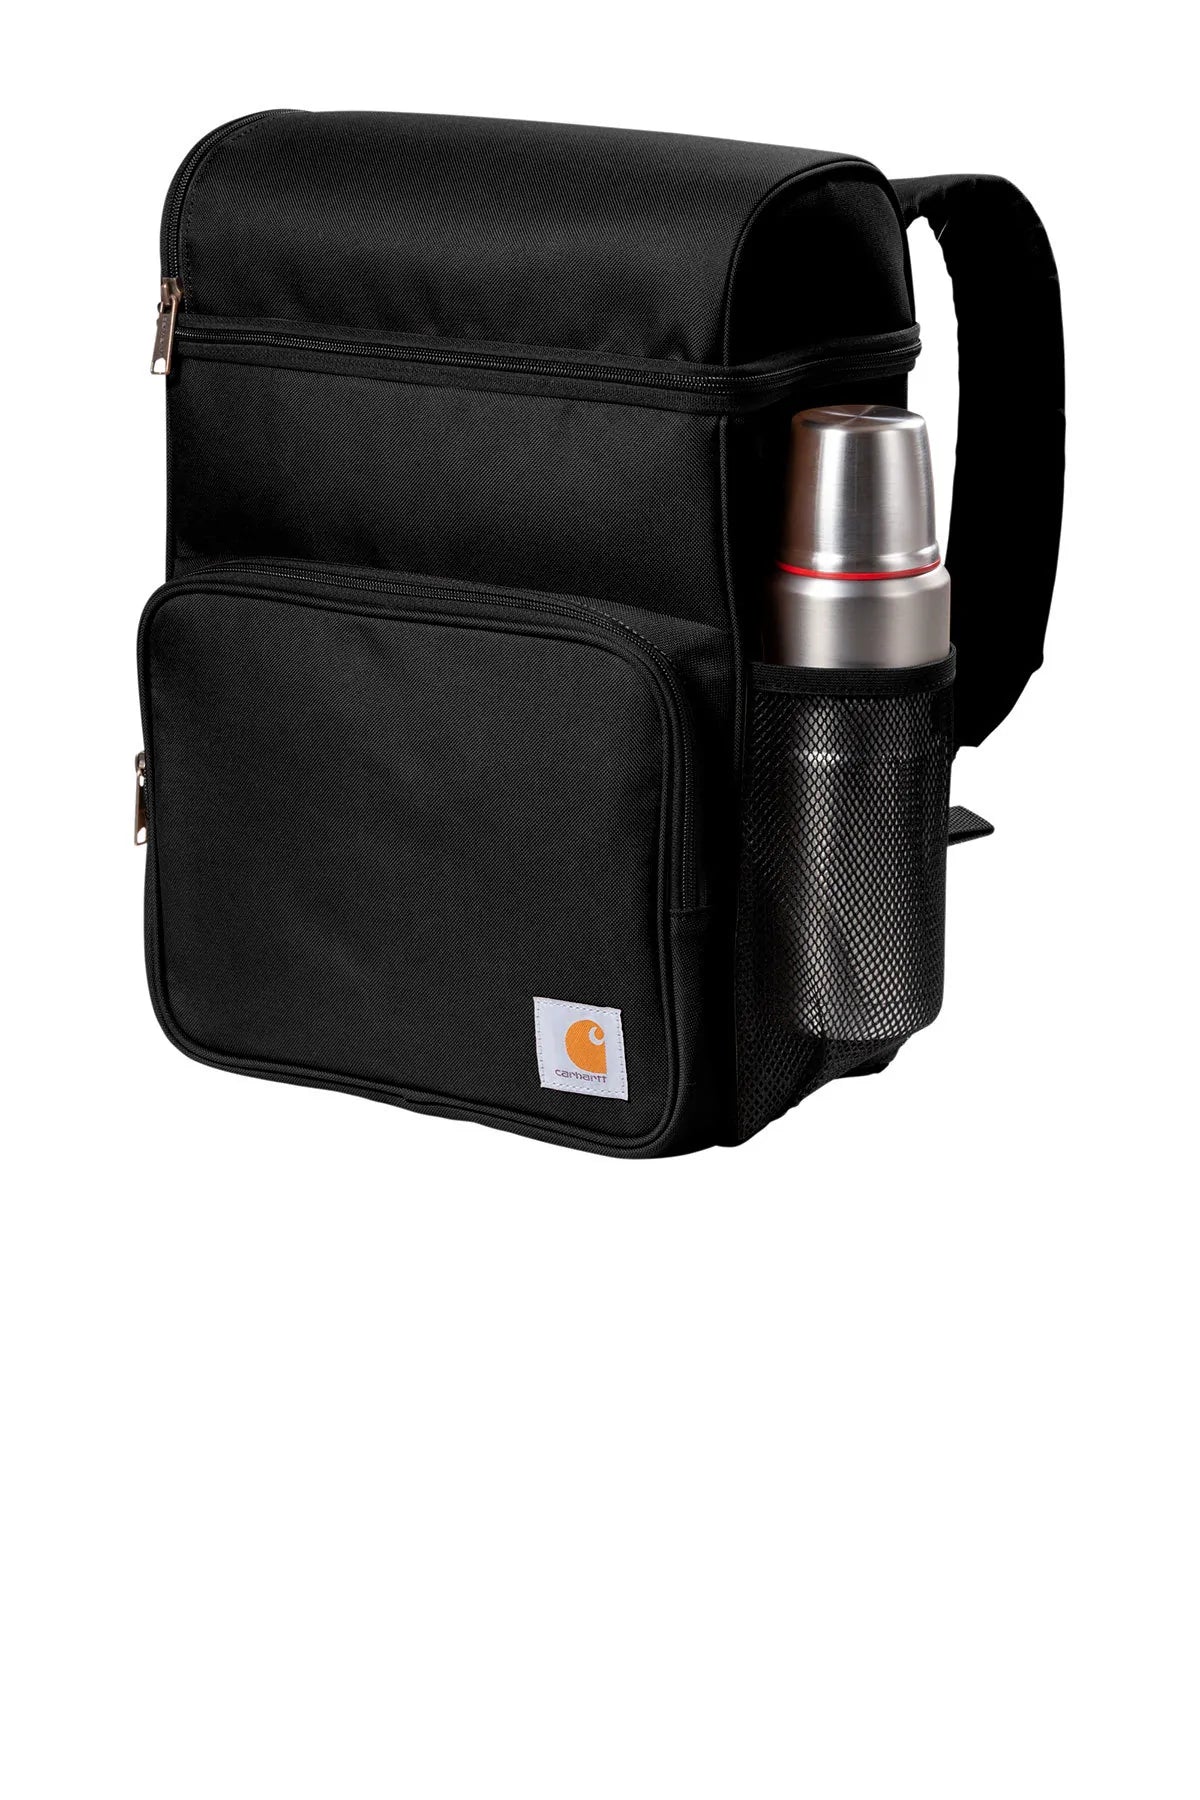 Carhartt Custom Backpack Coolers 20-Can, Black